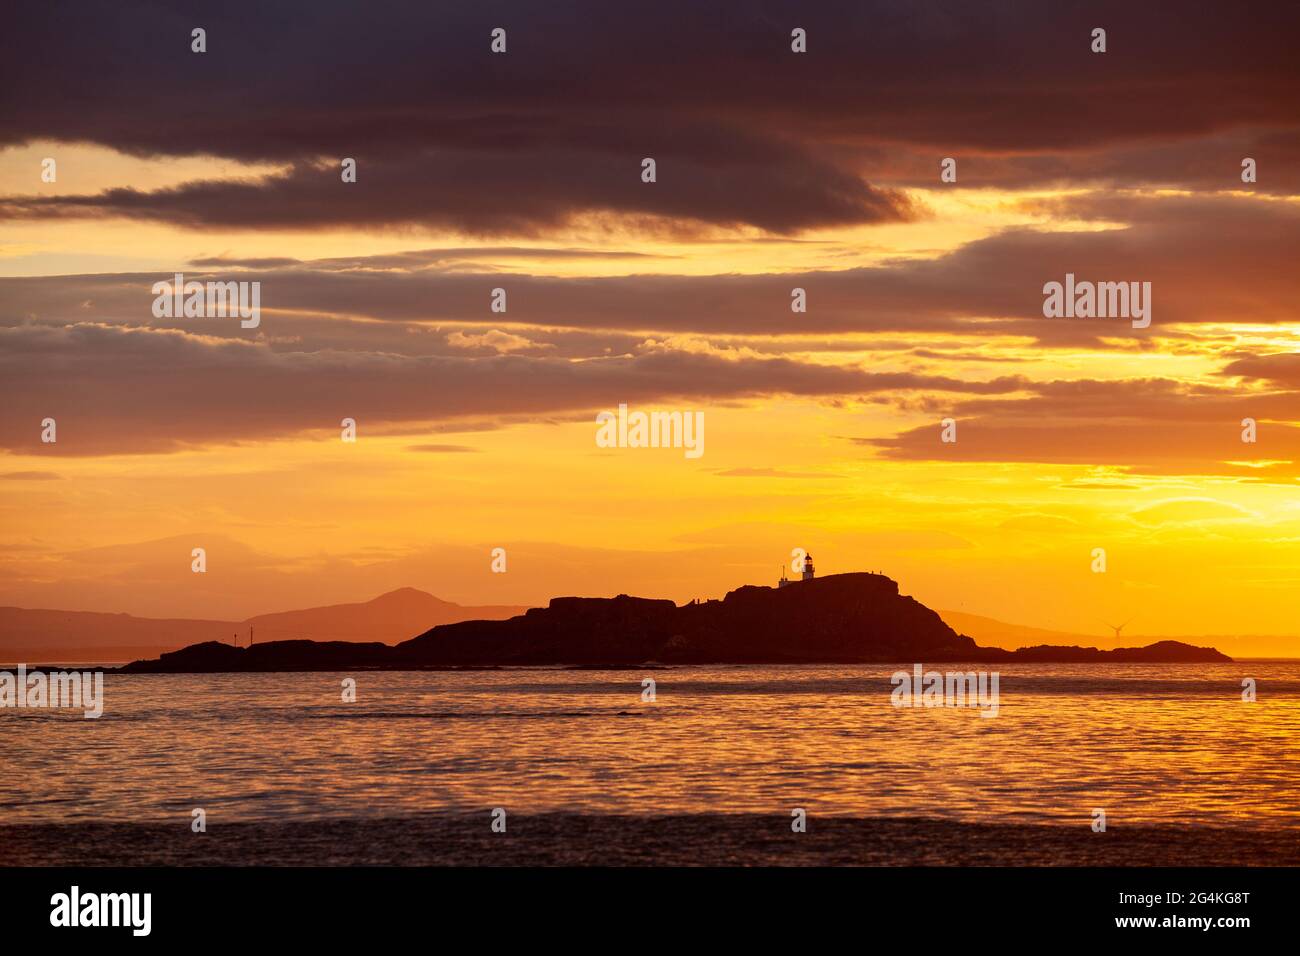 Una hermosa puesta de sol sobre la isla Fidra, North Berwick, Escocia Foto de stock